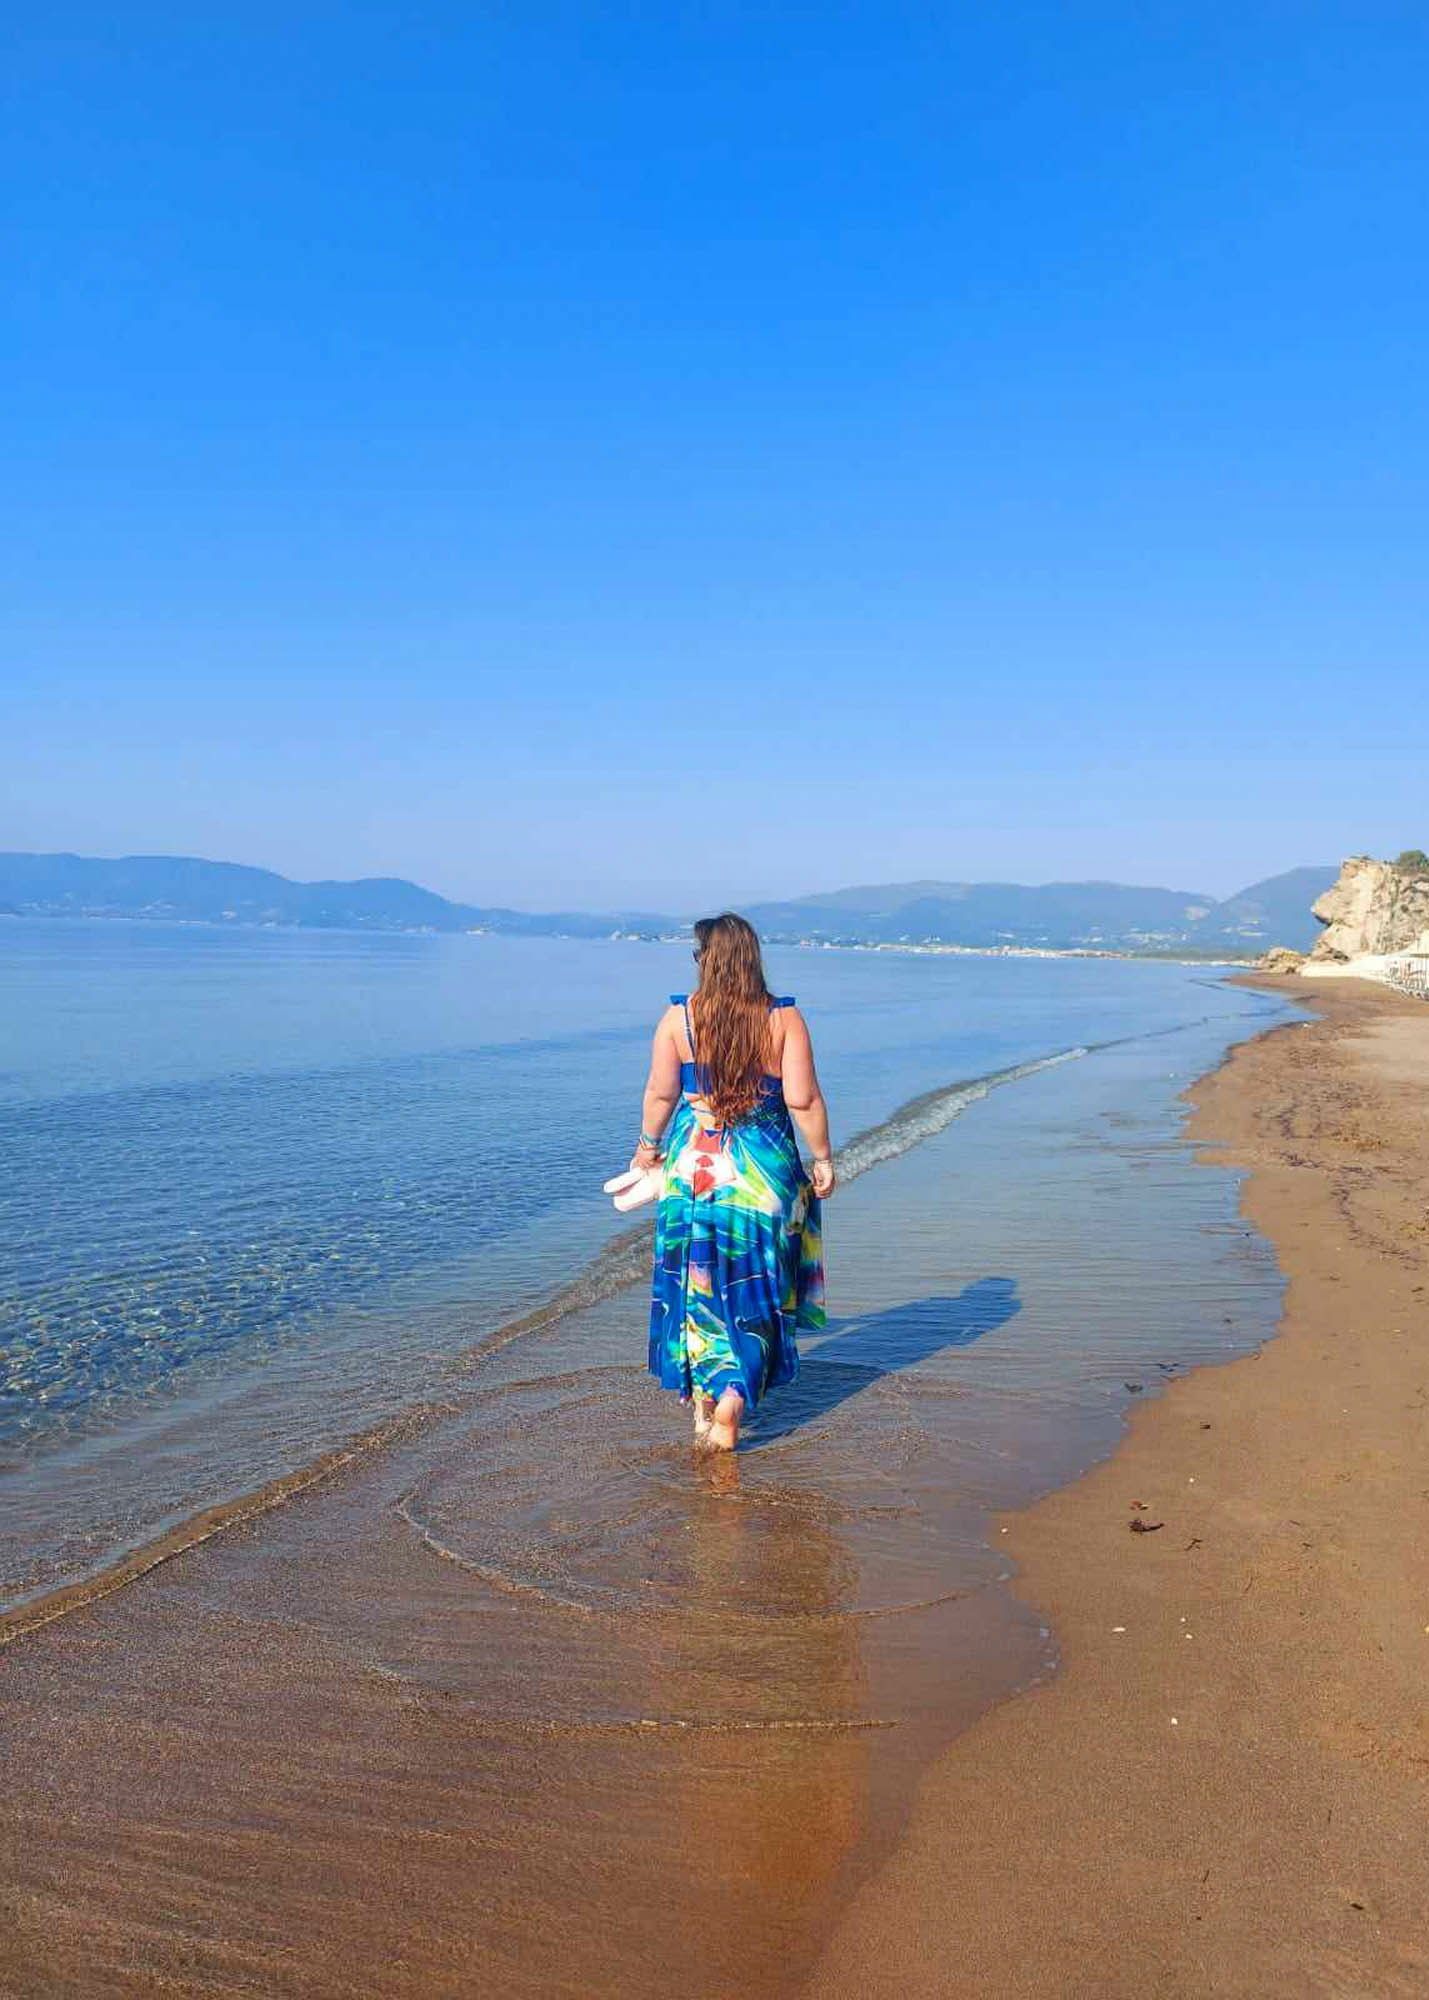 dziewczyna na jednej z plaż na wyspie zakynthos, spokojne, lazurowe morze